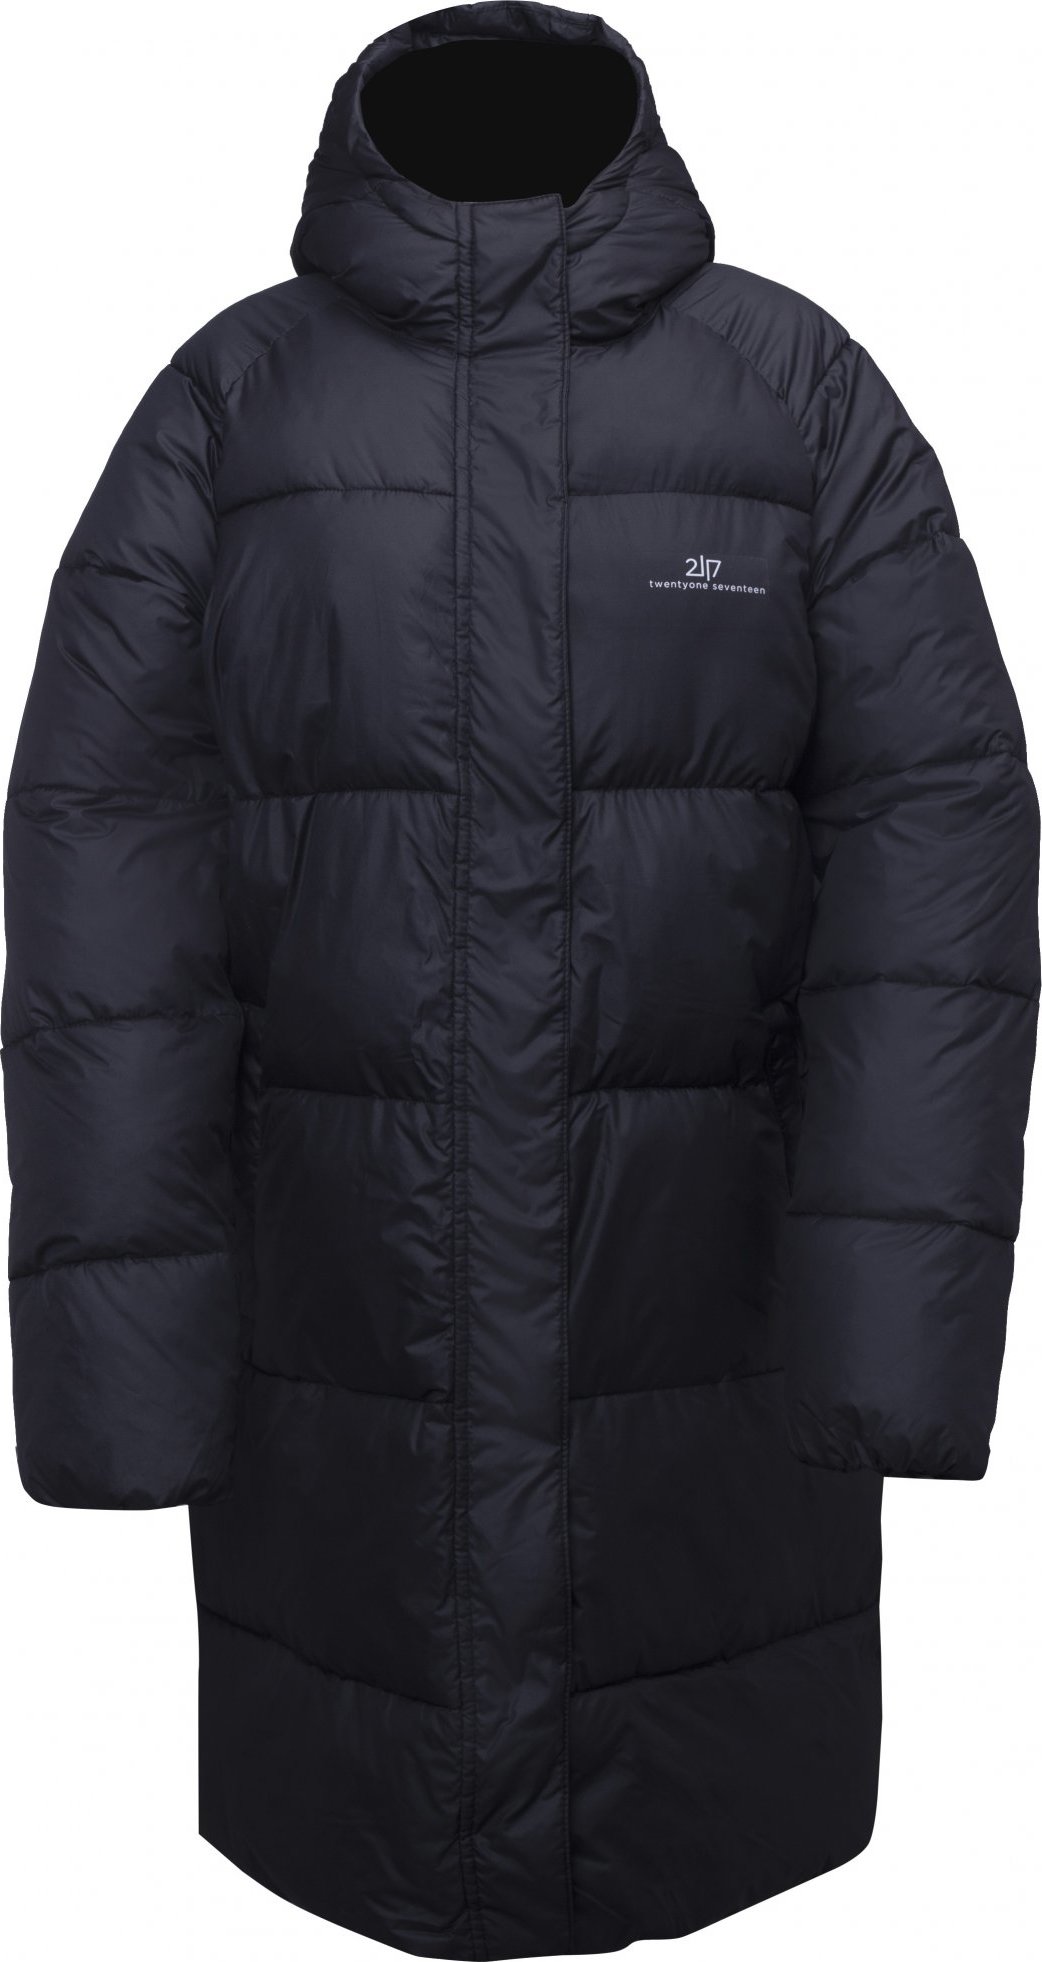 Dámský zimní prošívaný kabát 2117 Axelsvik černá Velikost: XL